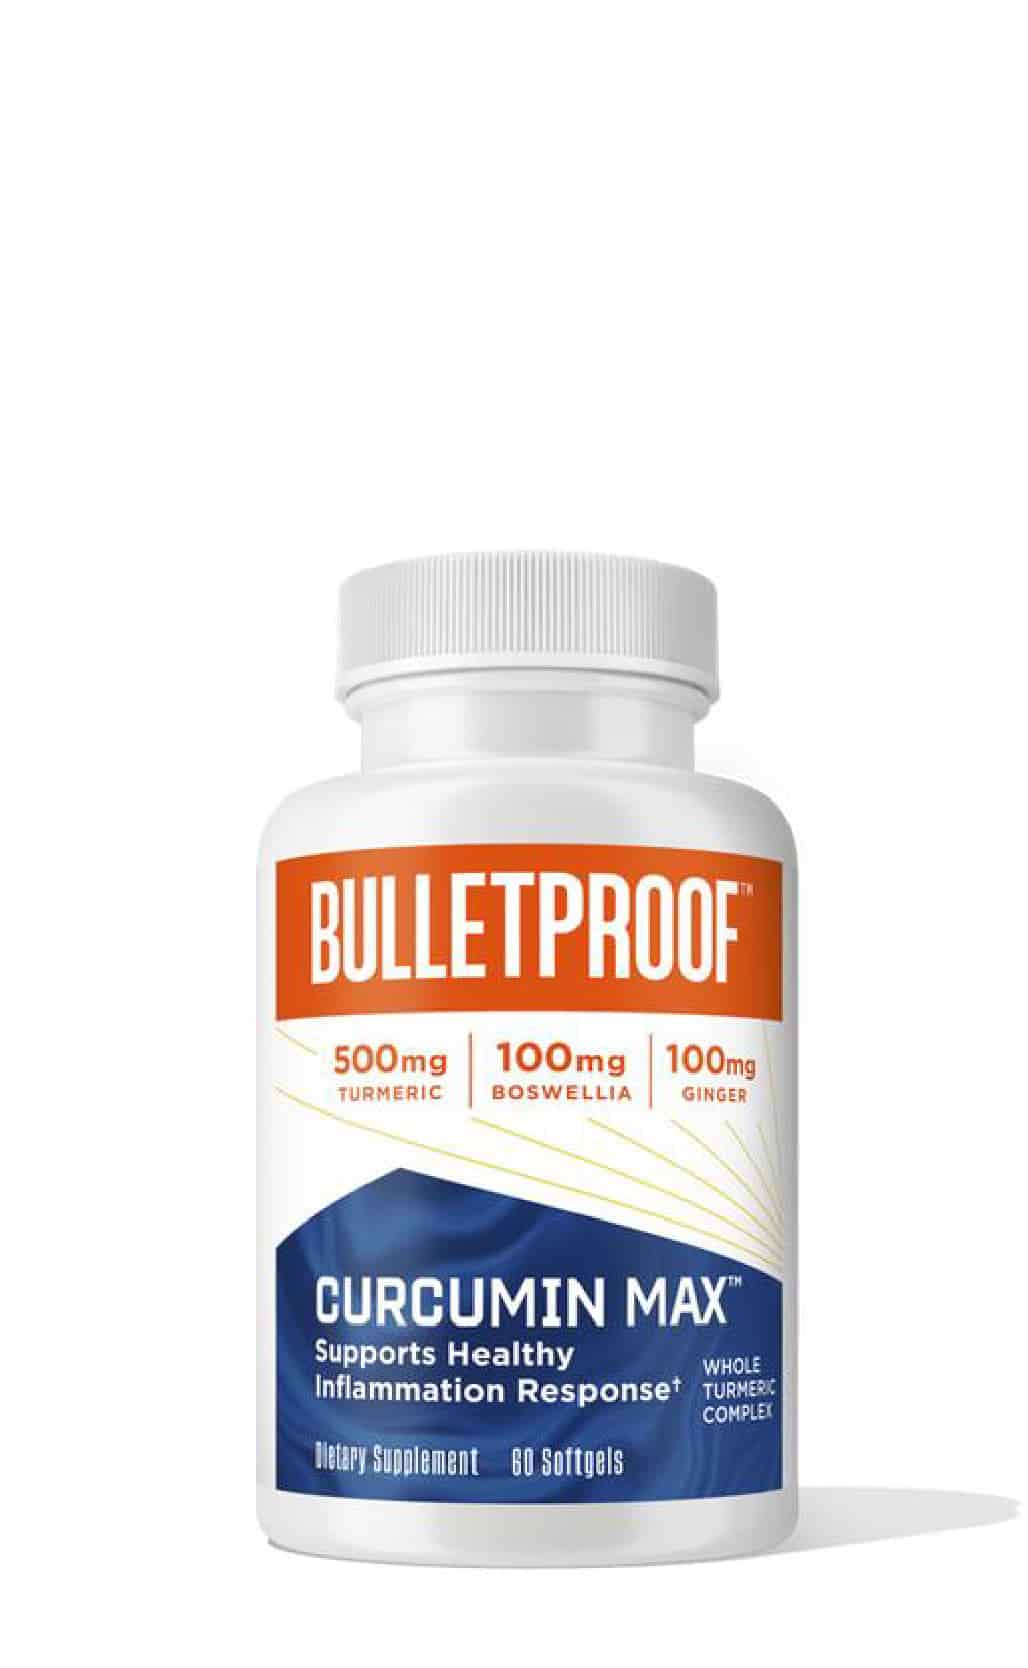 Buy Bulletproof Curcumin Max at LiveHelfi